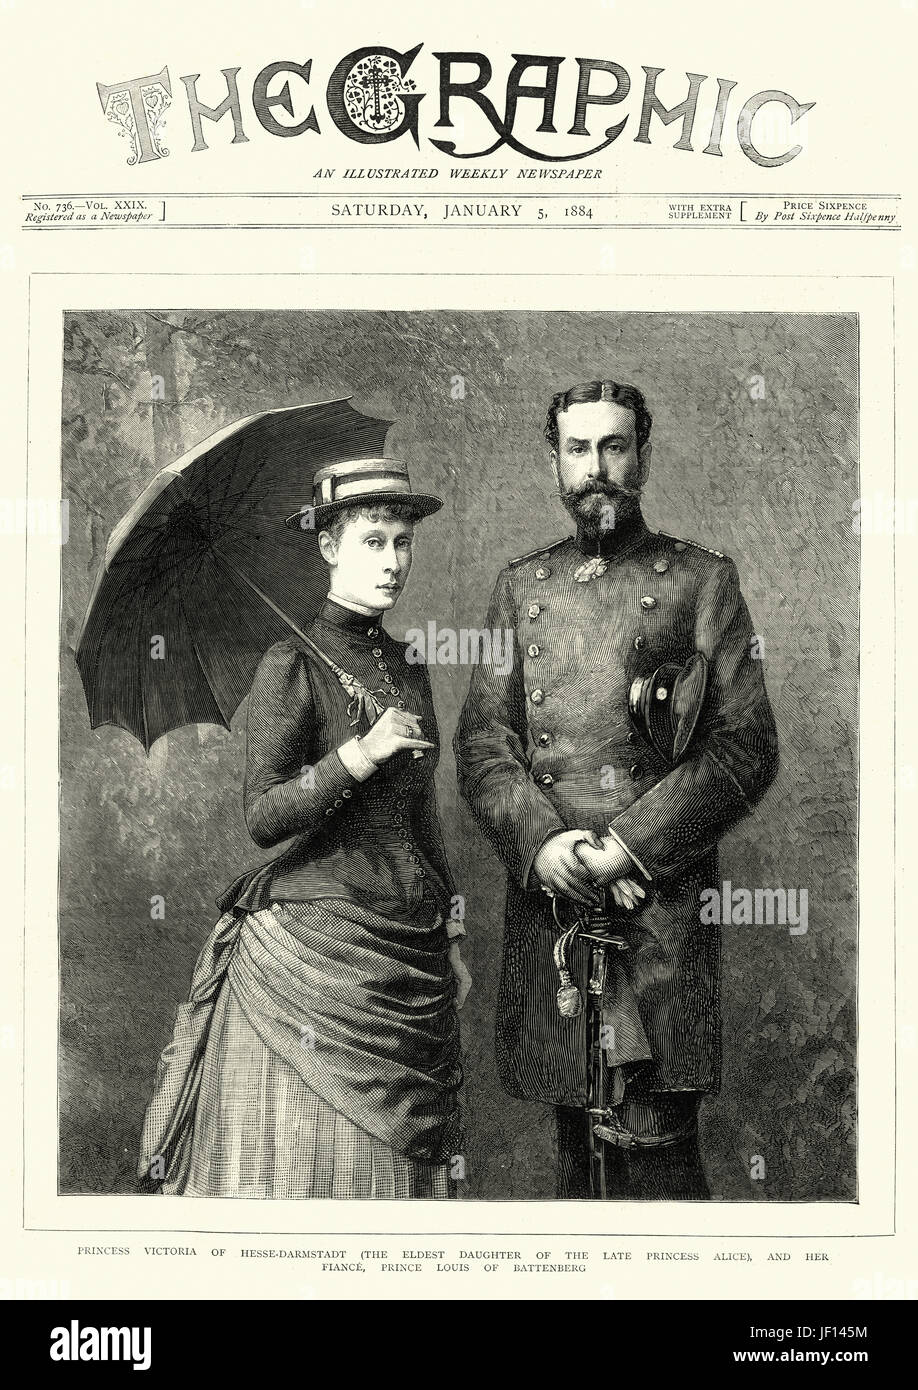 Pagina anteriore del giornale di grafica per il 5° gennaio 1884, mostrando la Principessa Victoria di Hesse-Darmstadt amd il suo fidanzato Principe Louis di Battenberg Foto Stock